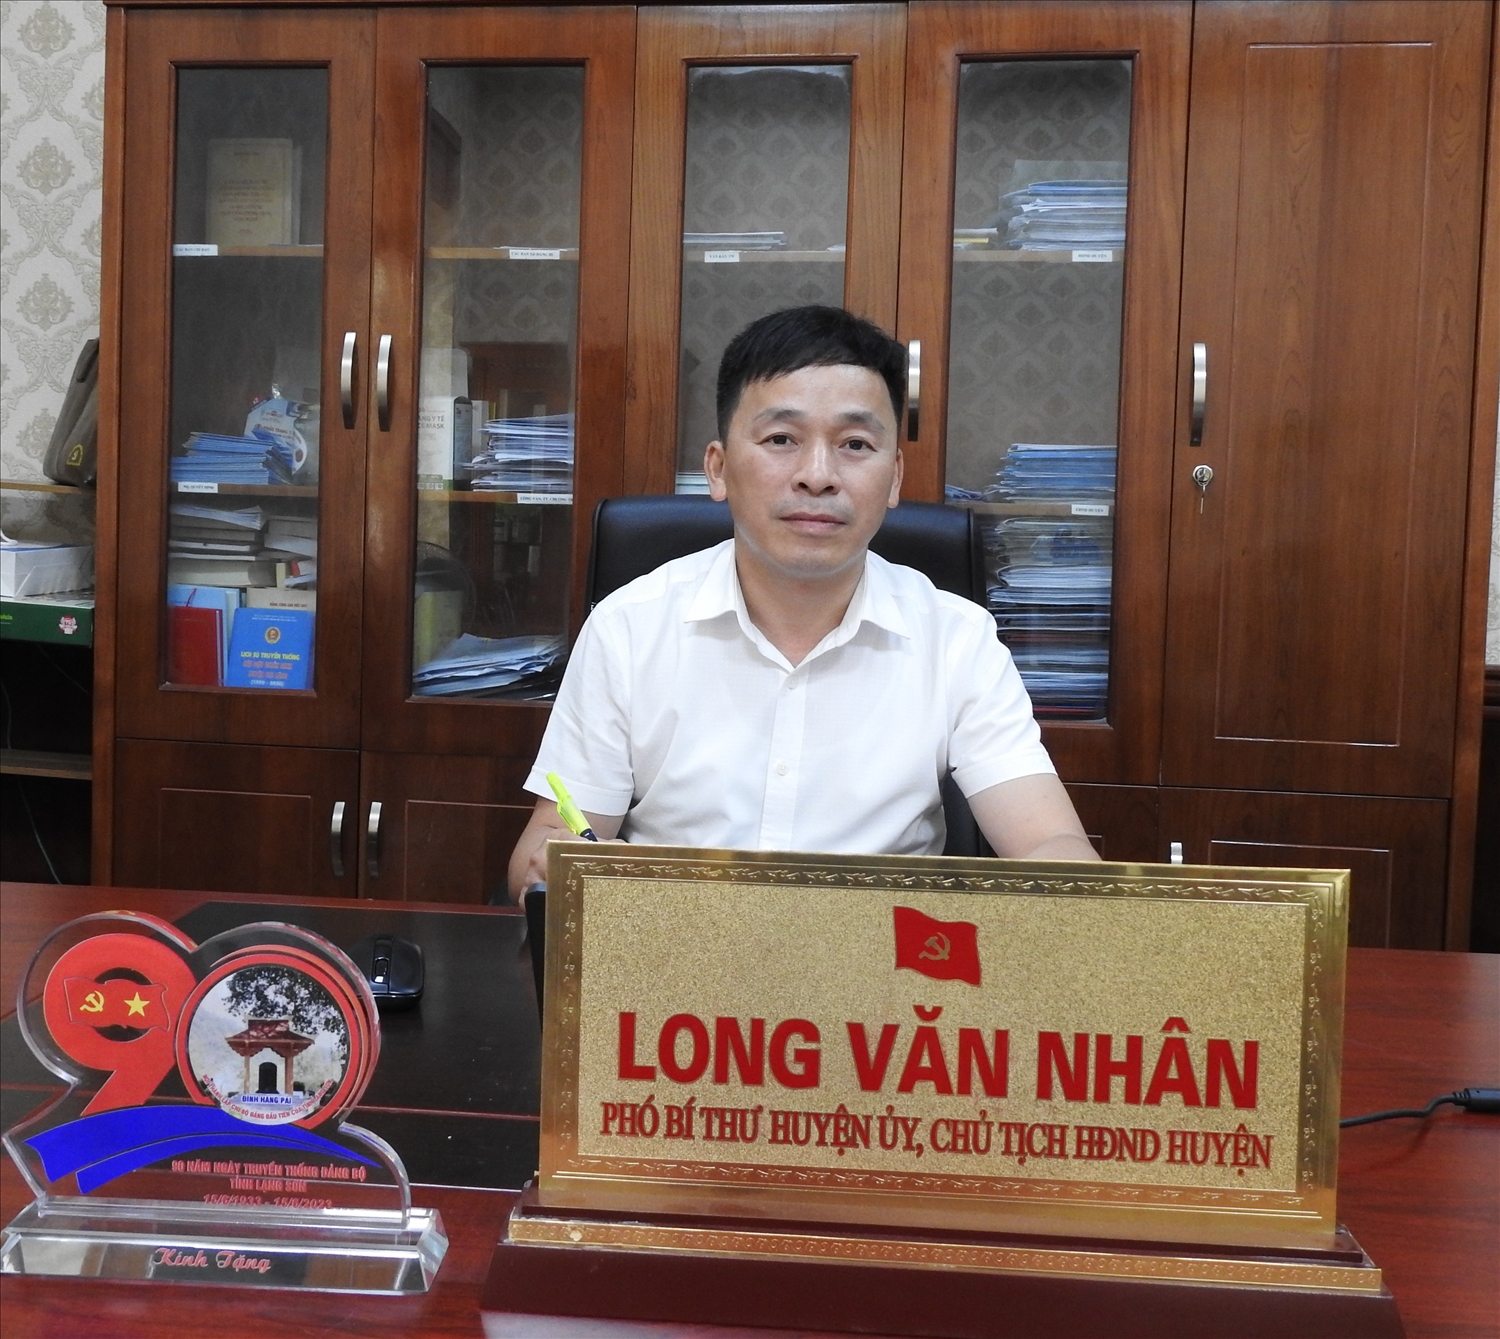 Phó Bí thư Huyện ủy, Chủ tịch HĐND huyện Chi Lăng - Long Văn Nhân